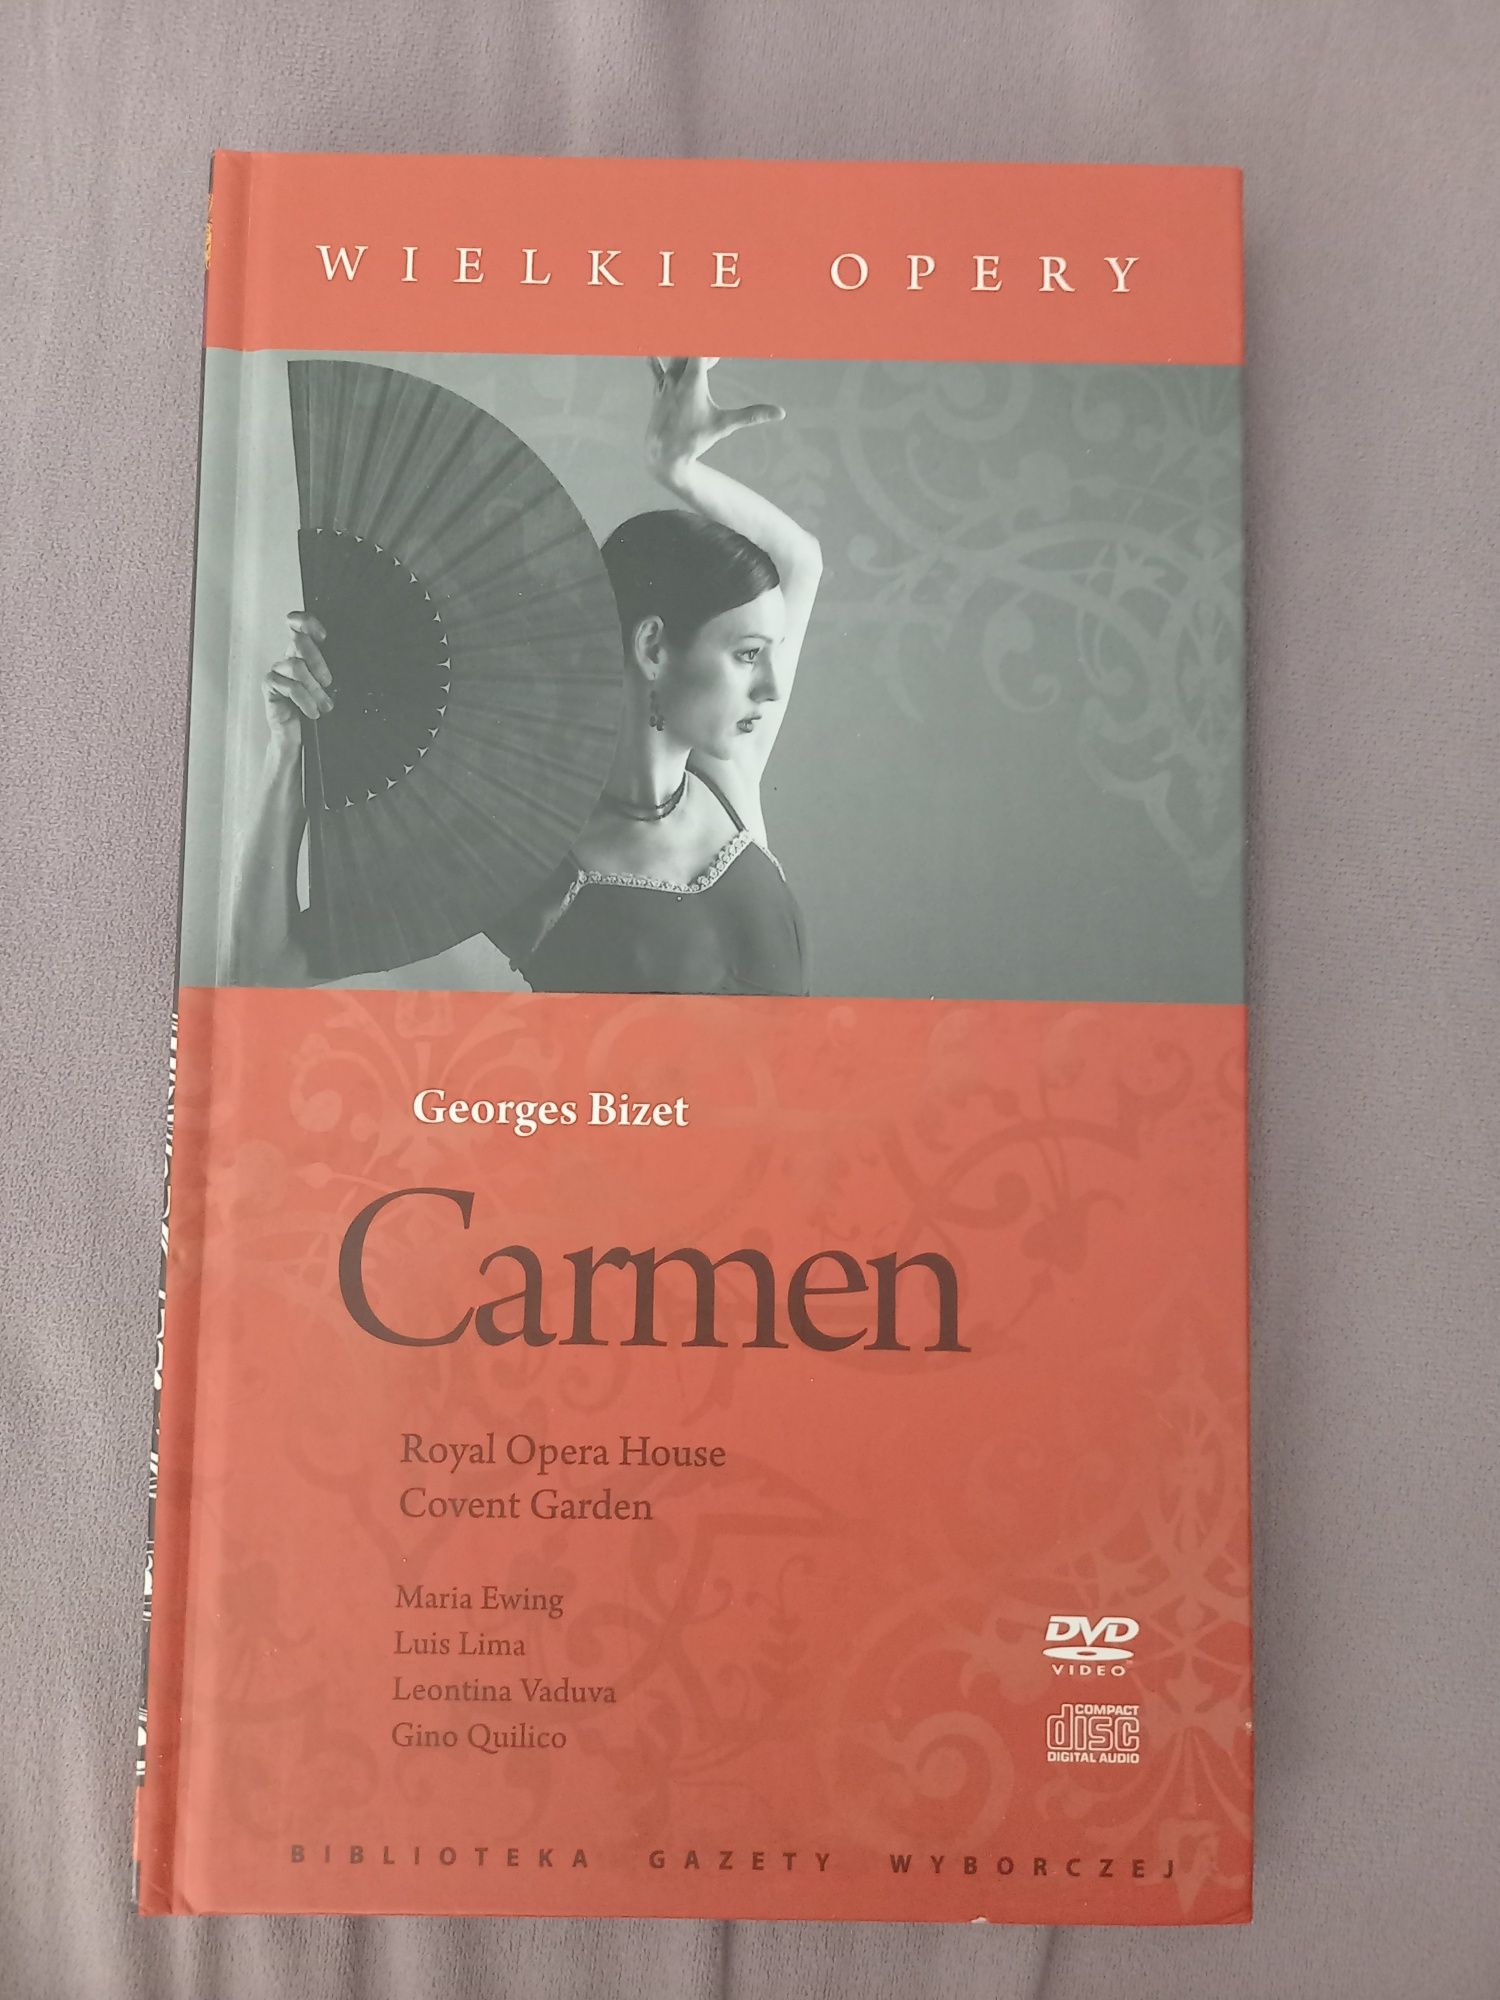 Wielkie opery "Carmen" Bizet